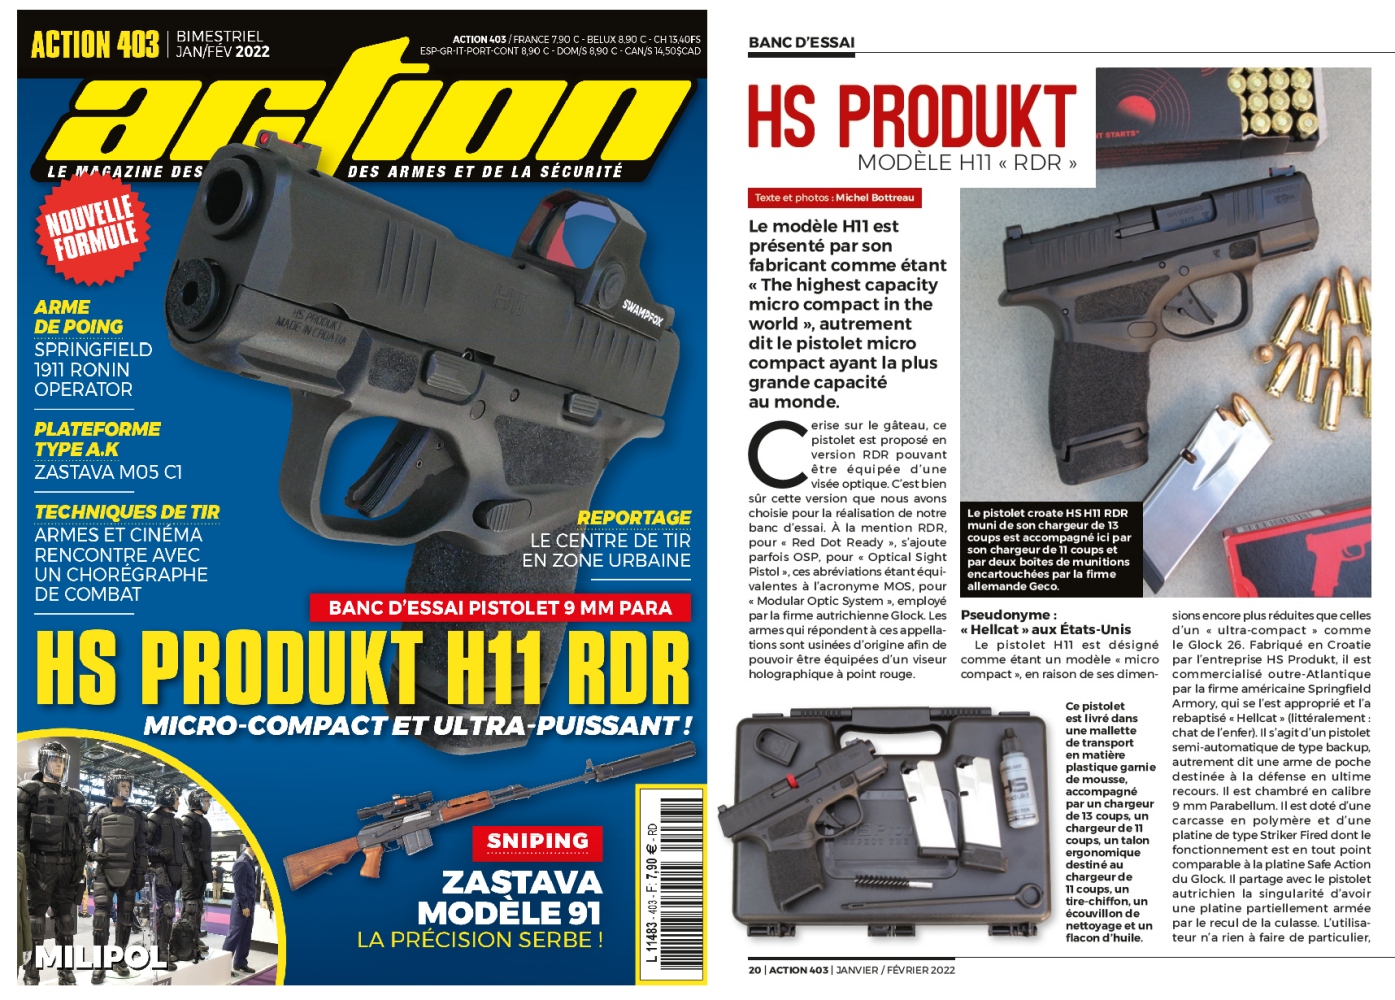 Le banc d’essai du pistolet HS Produkt H11 RDR a été publié sur 6 pages dans le magazine Action n°403 (janvier/février 2022).